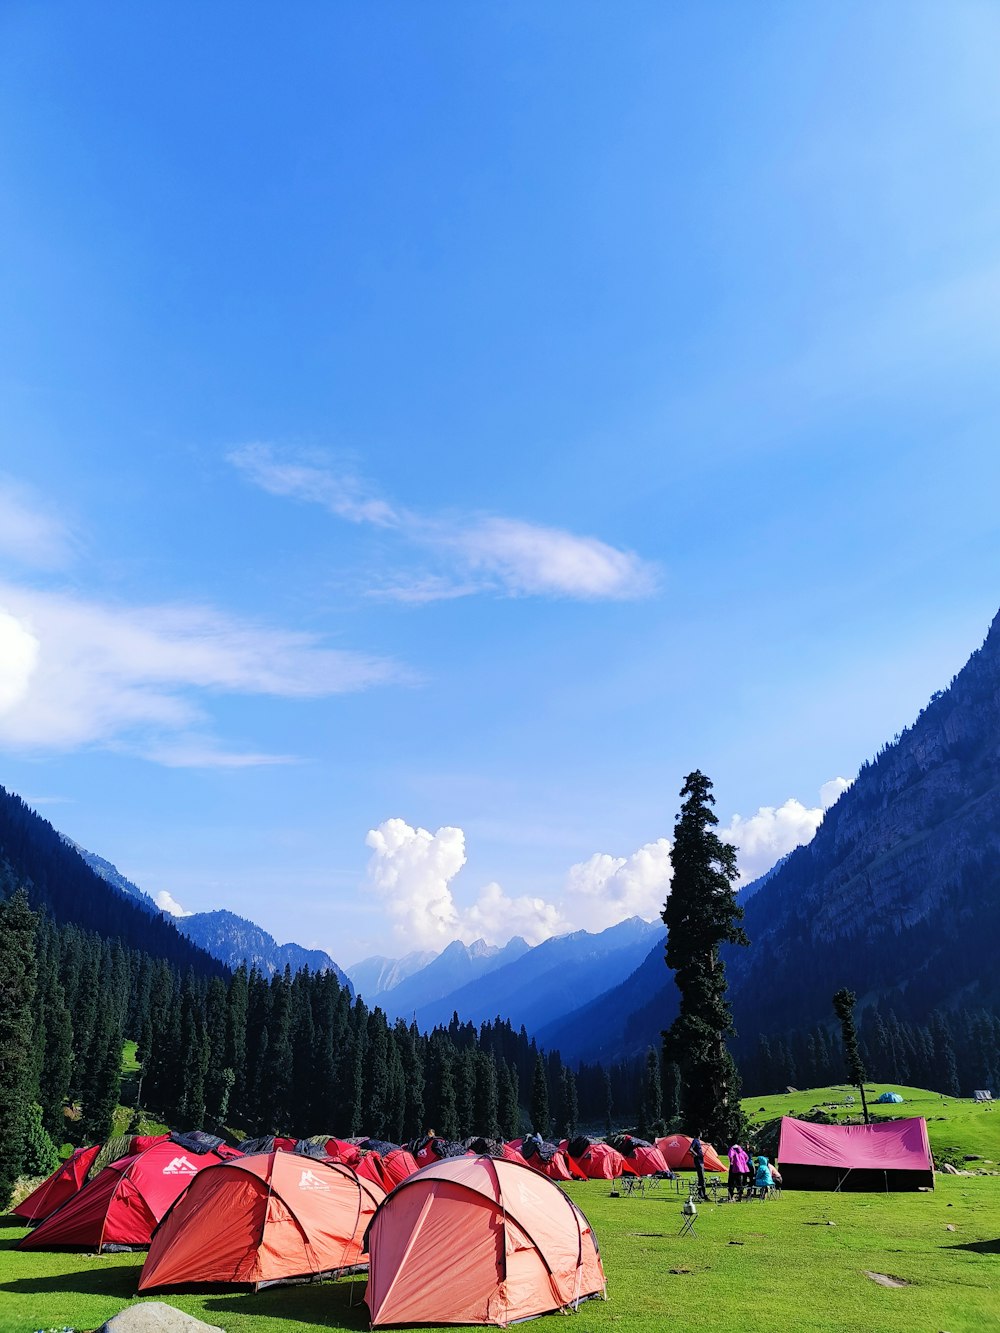 Un grupo de tiendas de campaña instaladas en un campo con montañas al fondo